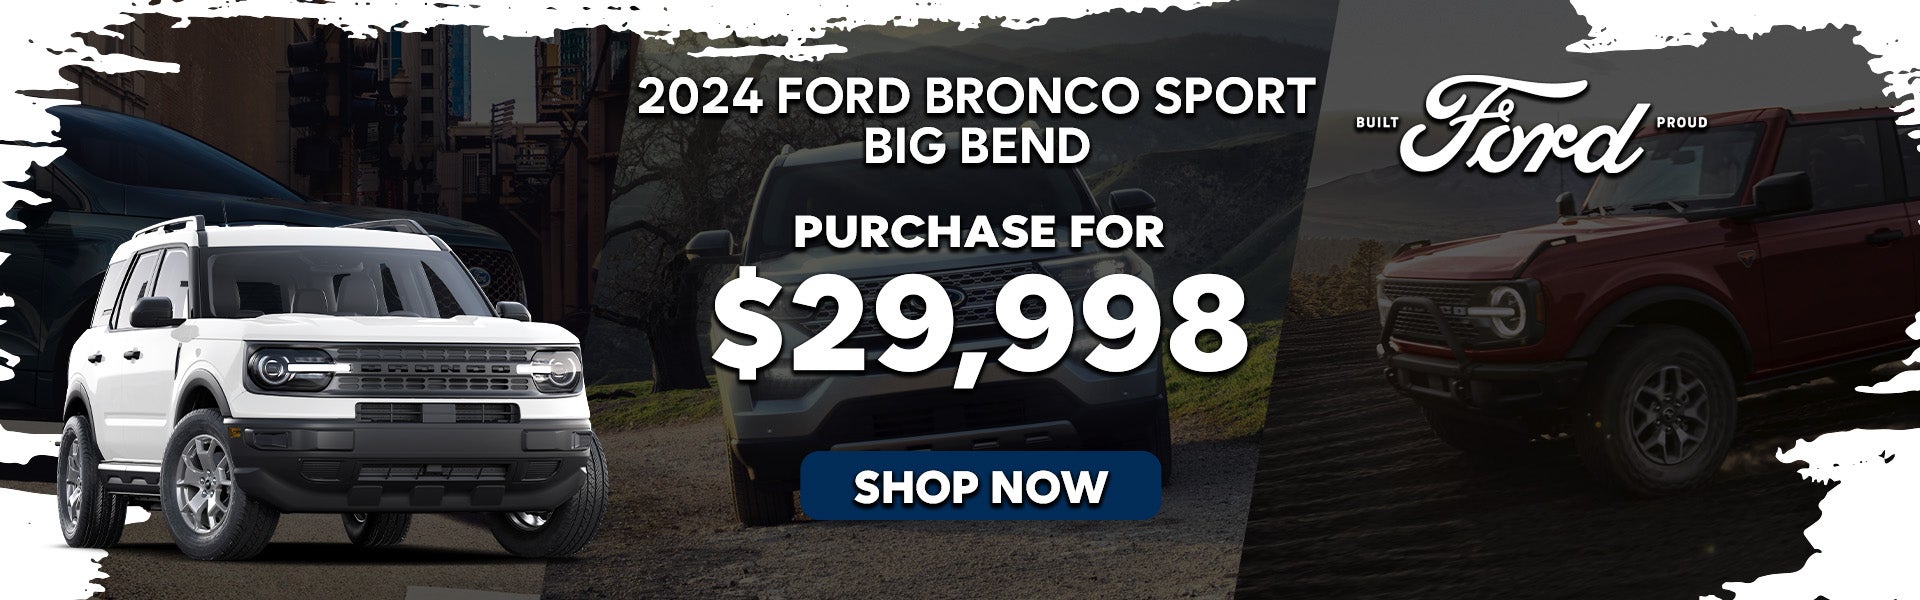 2024 Ford Bronco Sport Big Bend Special Offer